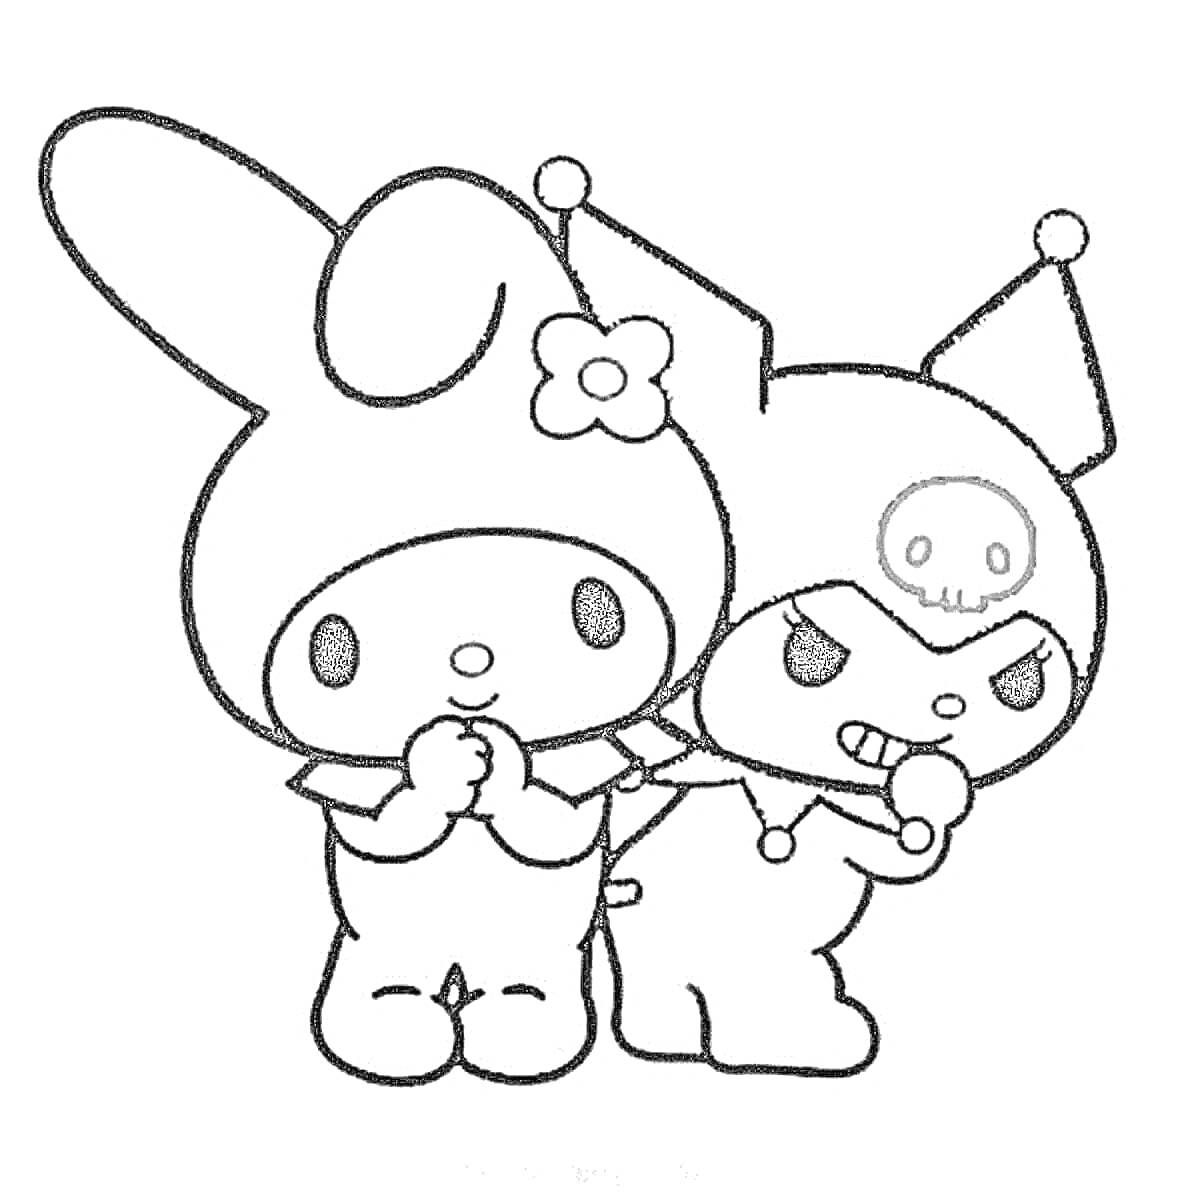 Раскраска Две милые персонажки в костюмах: одна с цветочком на голове и одна с черепом на шапочке